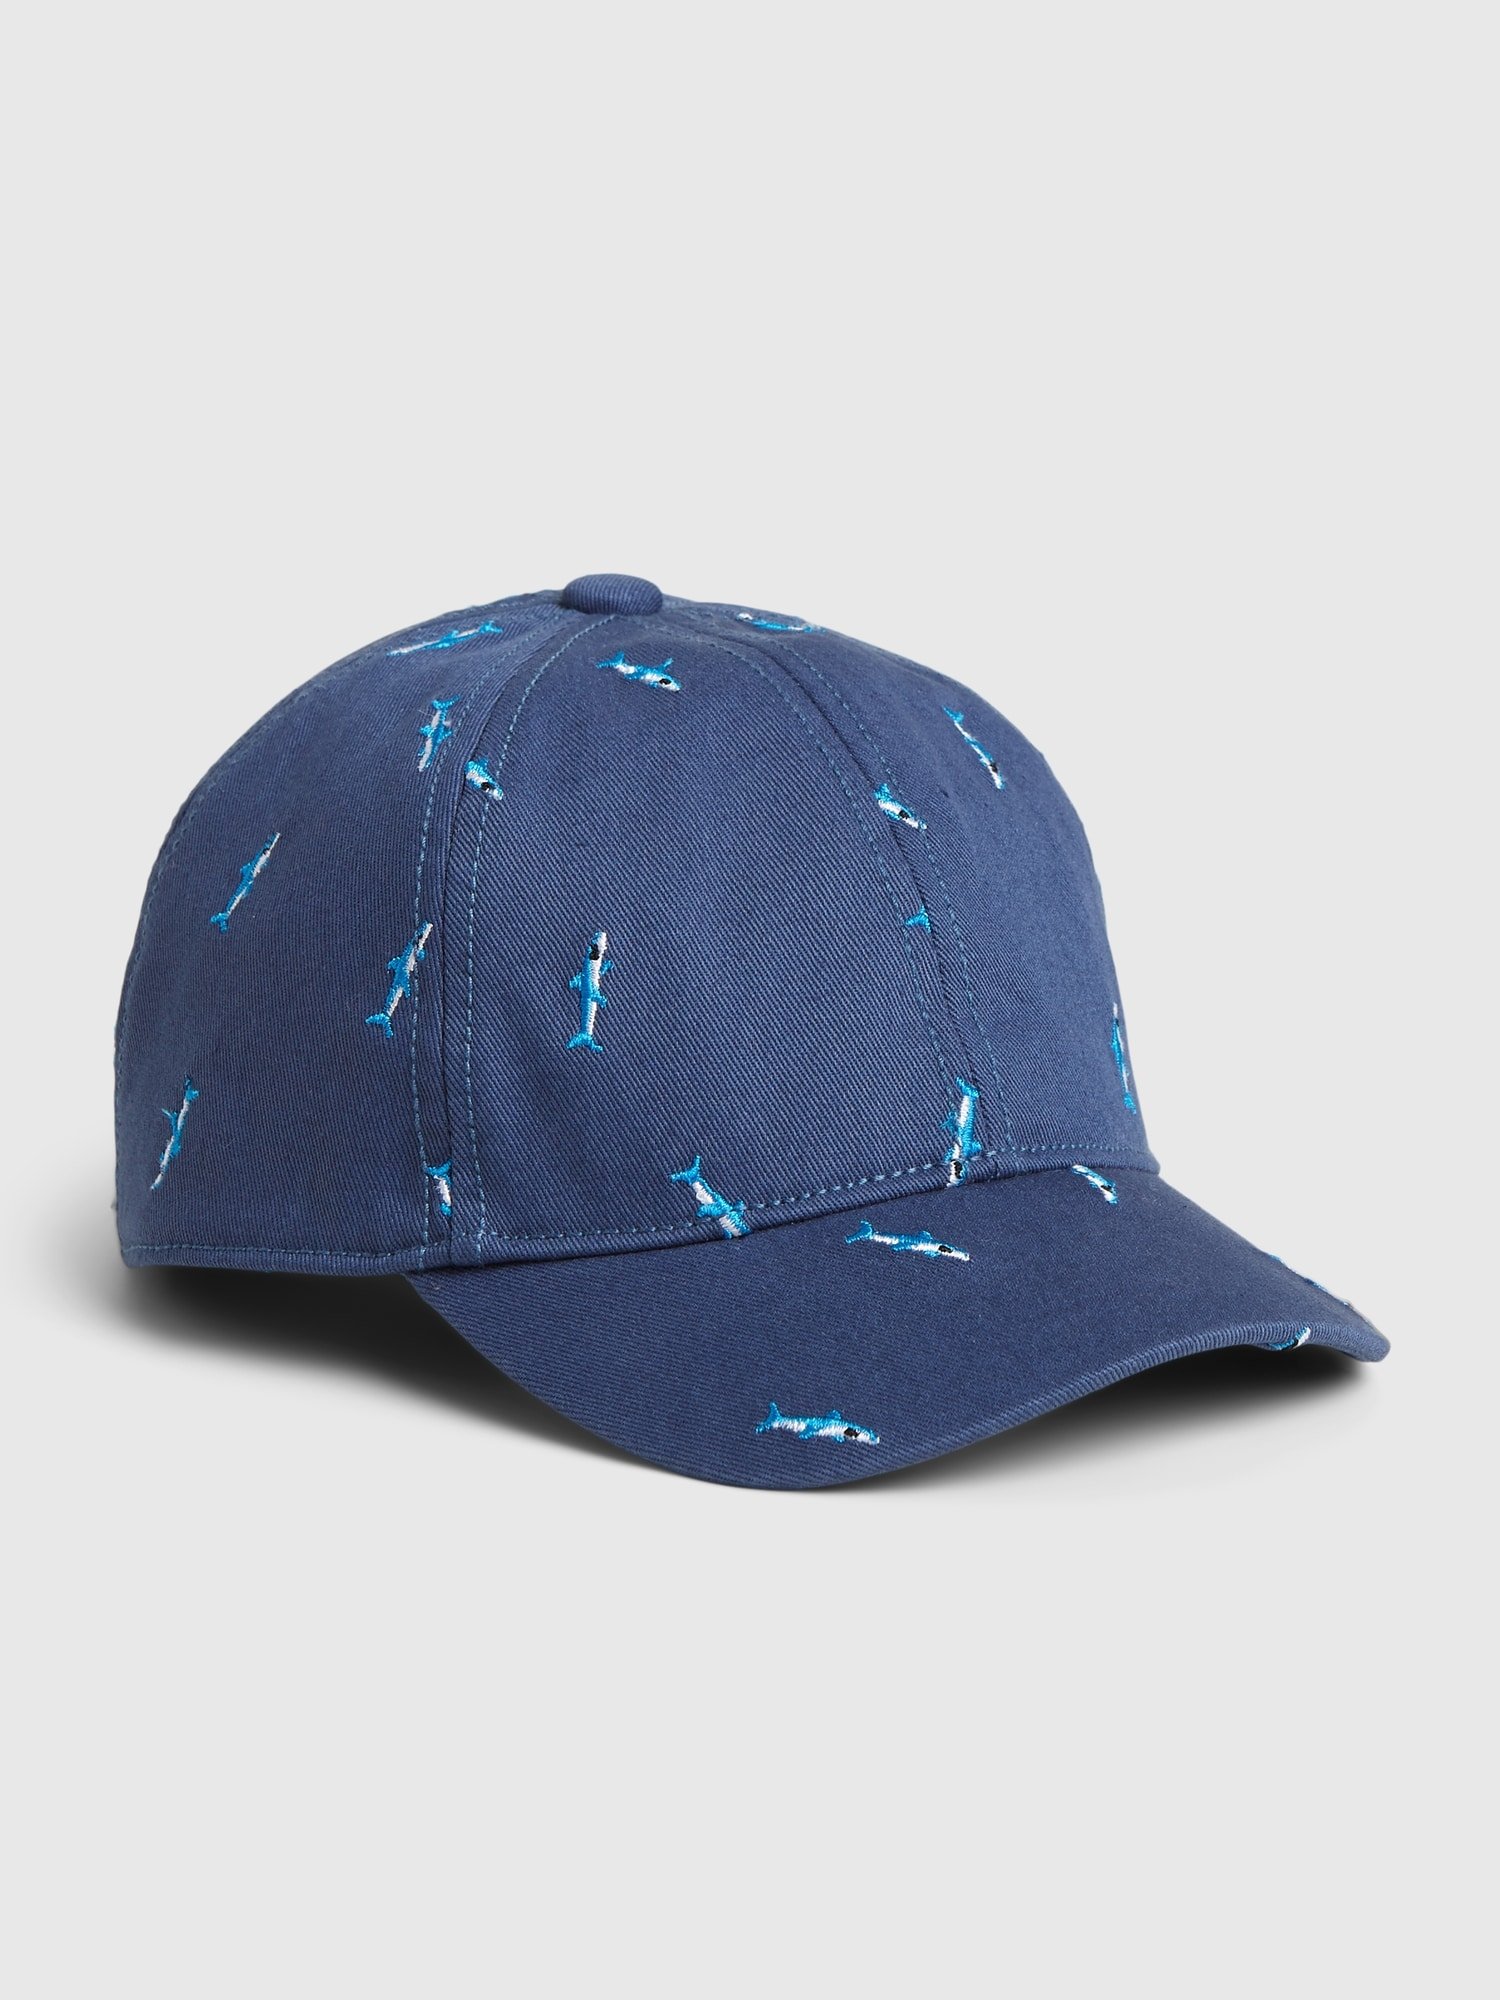 Köpek Balığı Desenli Şapka product image